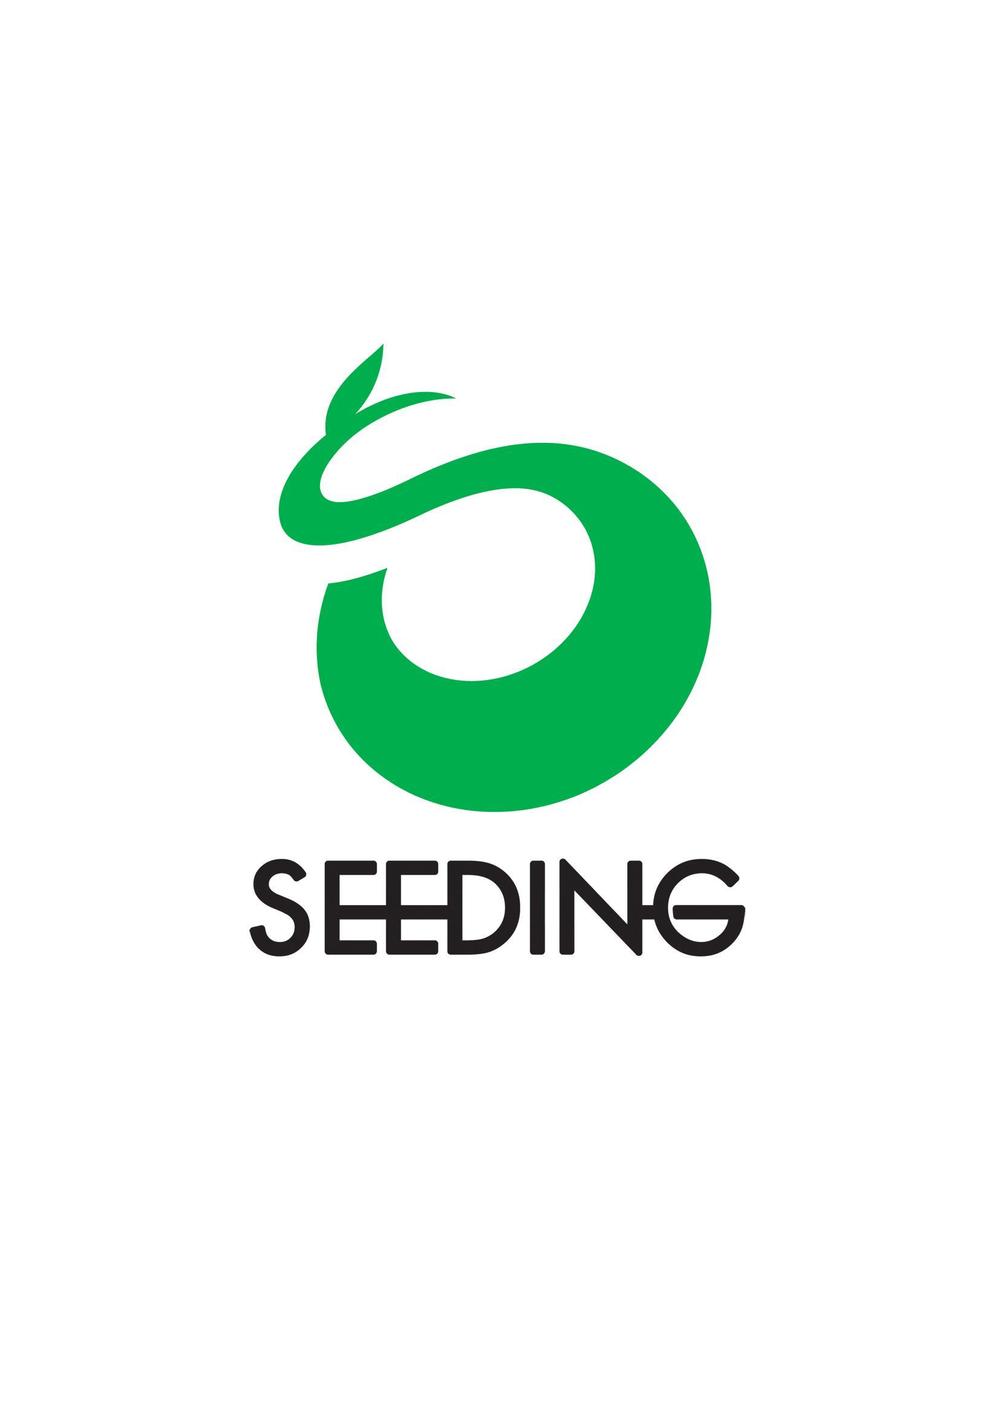 seedingA1.jpg